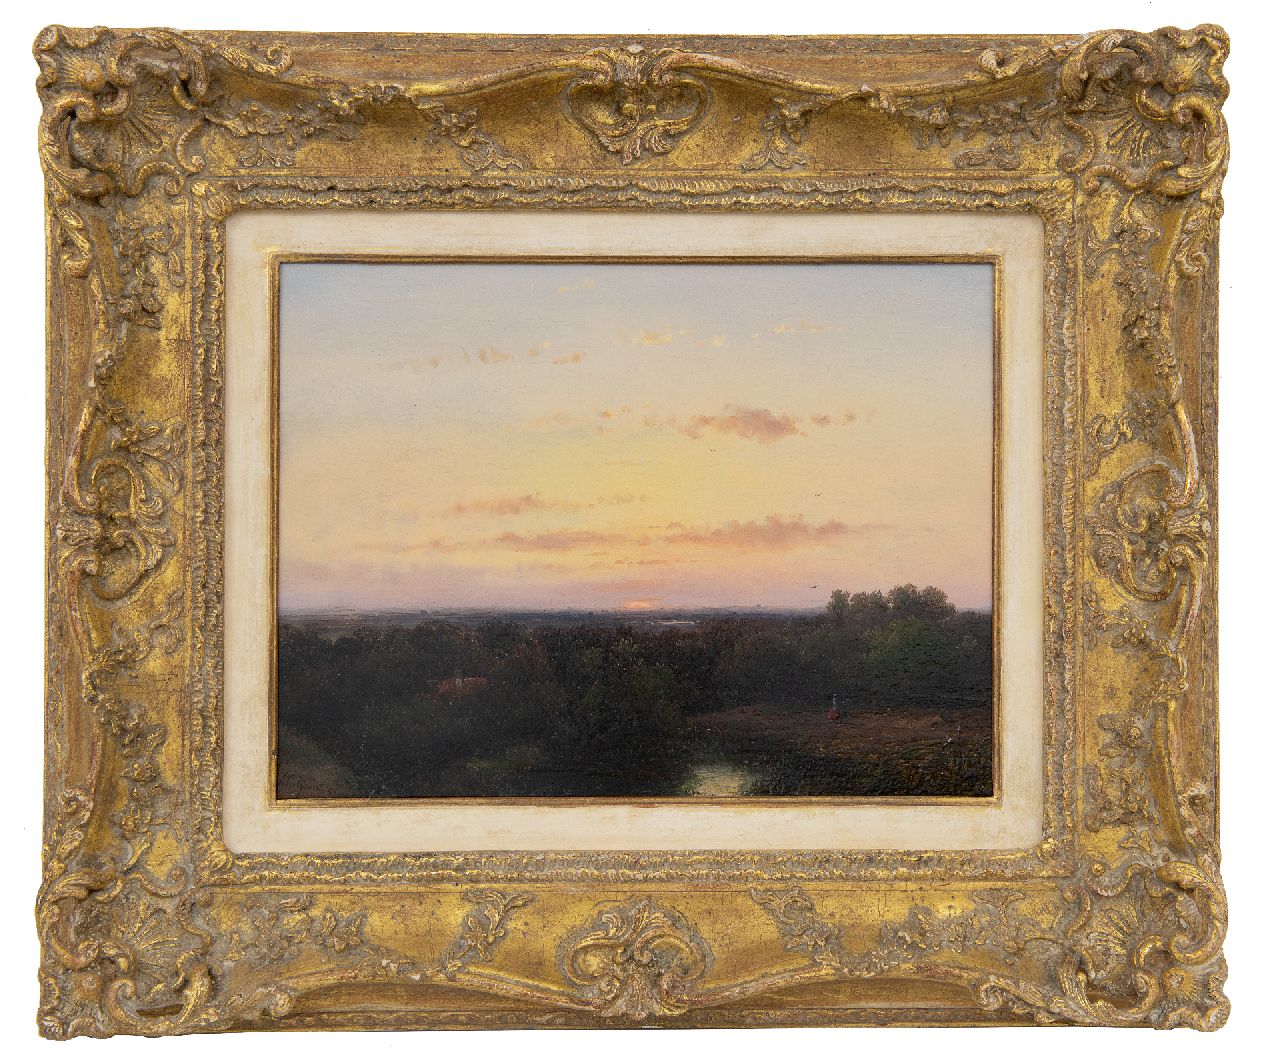 Schelfhout A.  | Andreas Schelfhout | Schilderijen te koop aangeboden | Panoramisch landschap bij zonsondergang, olieverf op paneel 21,8 x 29,1 cm, gesigneerd linksonder en gedateerd '51